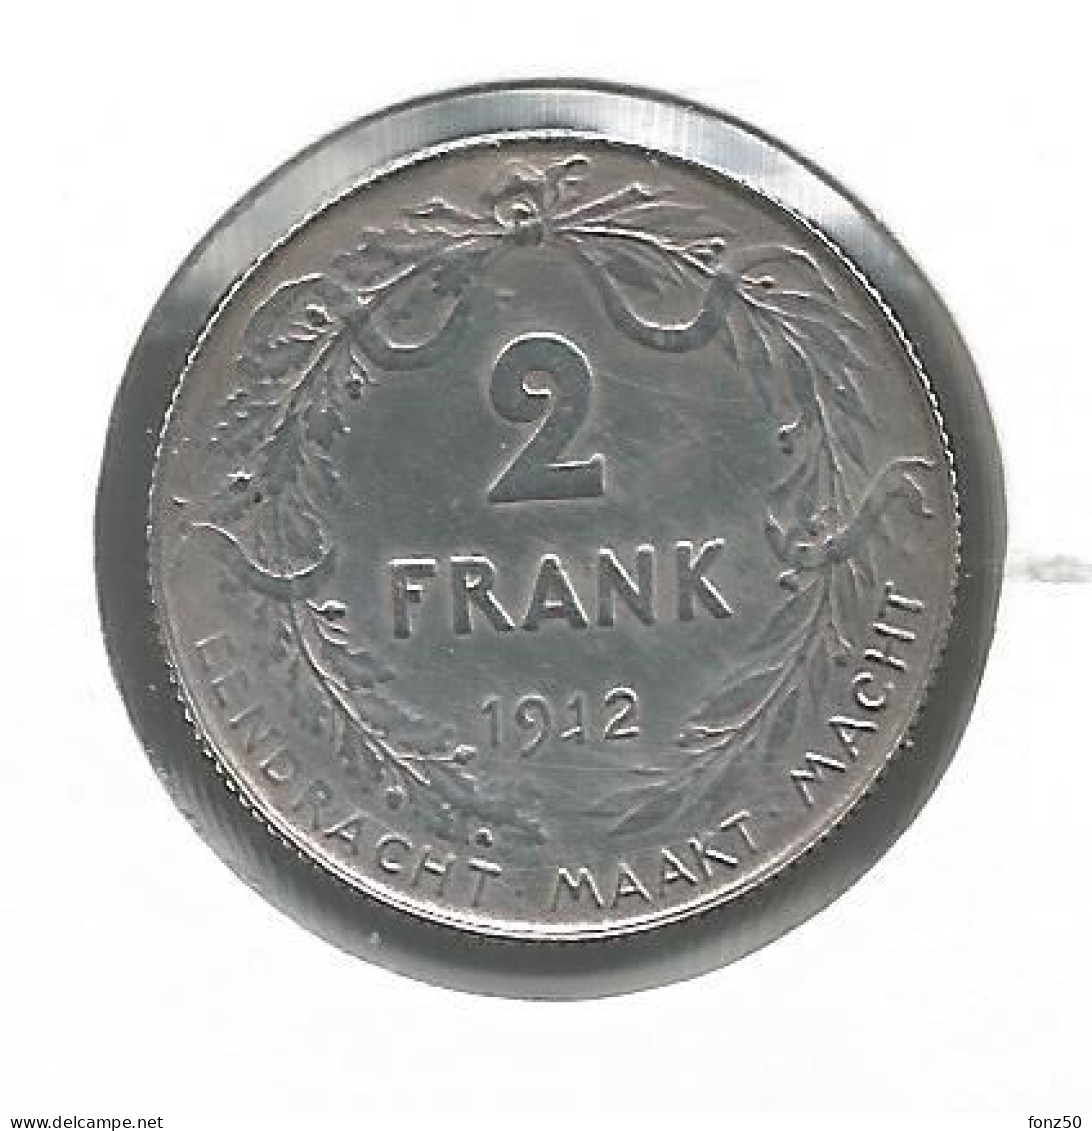 ALBERT I * 2 Frank 1912 Vlaams * F D C * Nr 12988 - 2 Francs